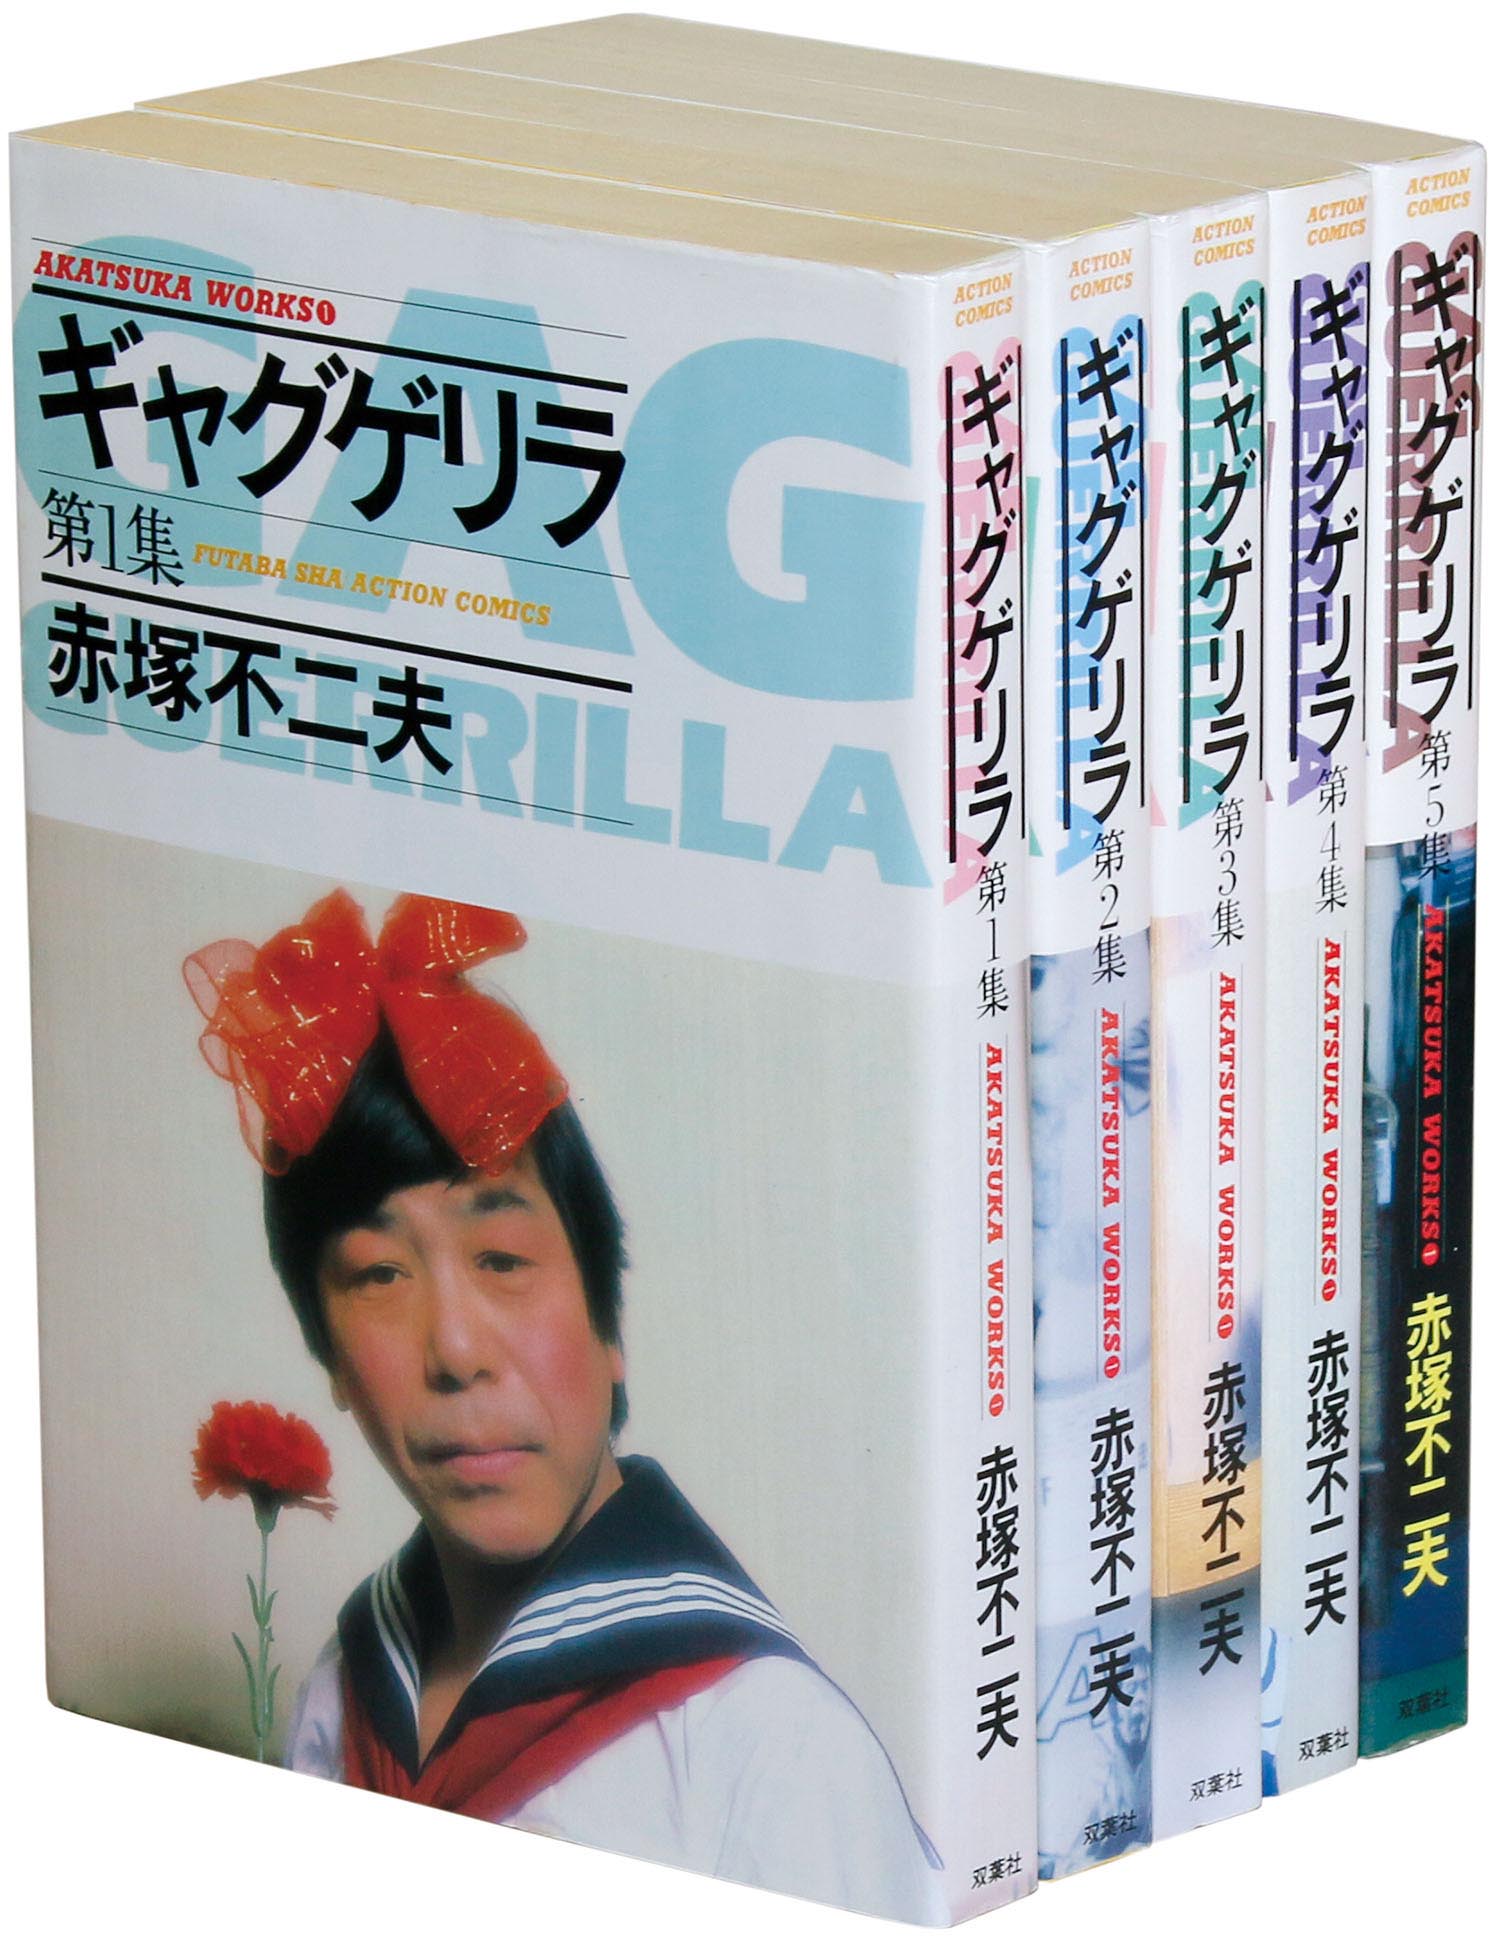 アクションコミックス/赤塚不二夫「ギャグゲリラ全5巻初版セット」